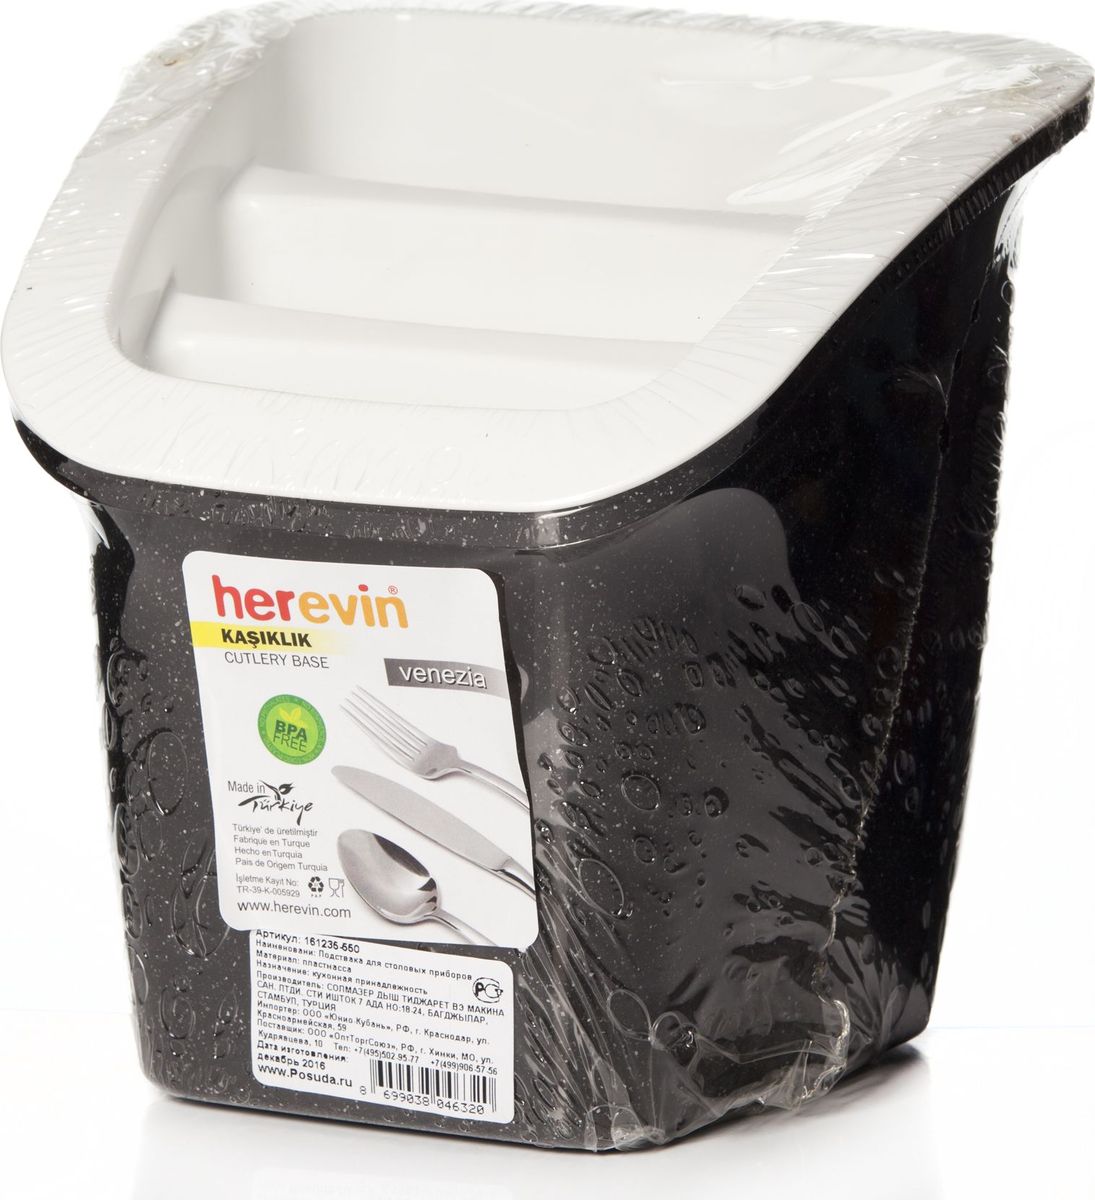 фото Подставка для столовых приборов "Herevin", цвет: черный, белый. 161235-550